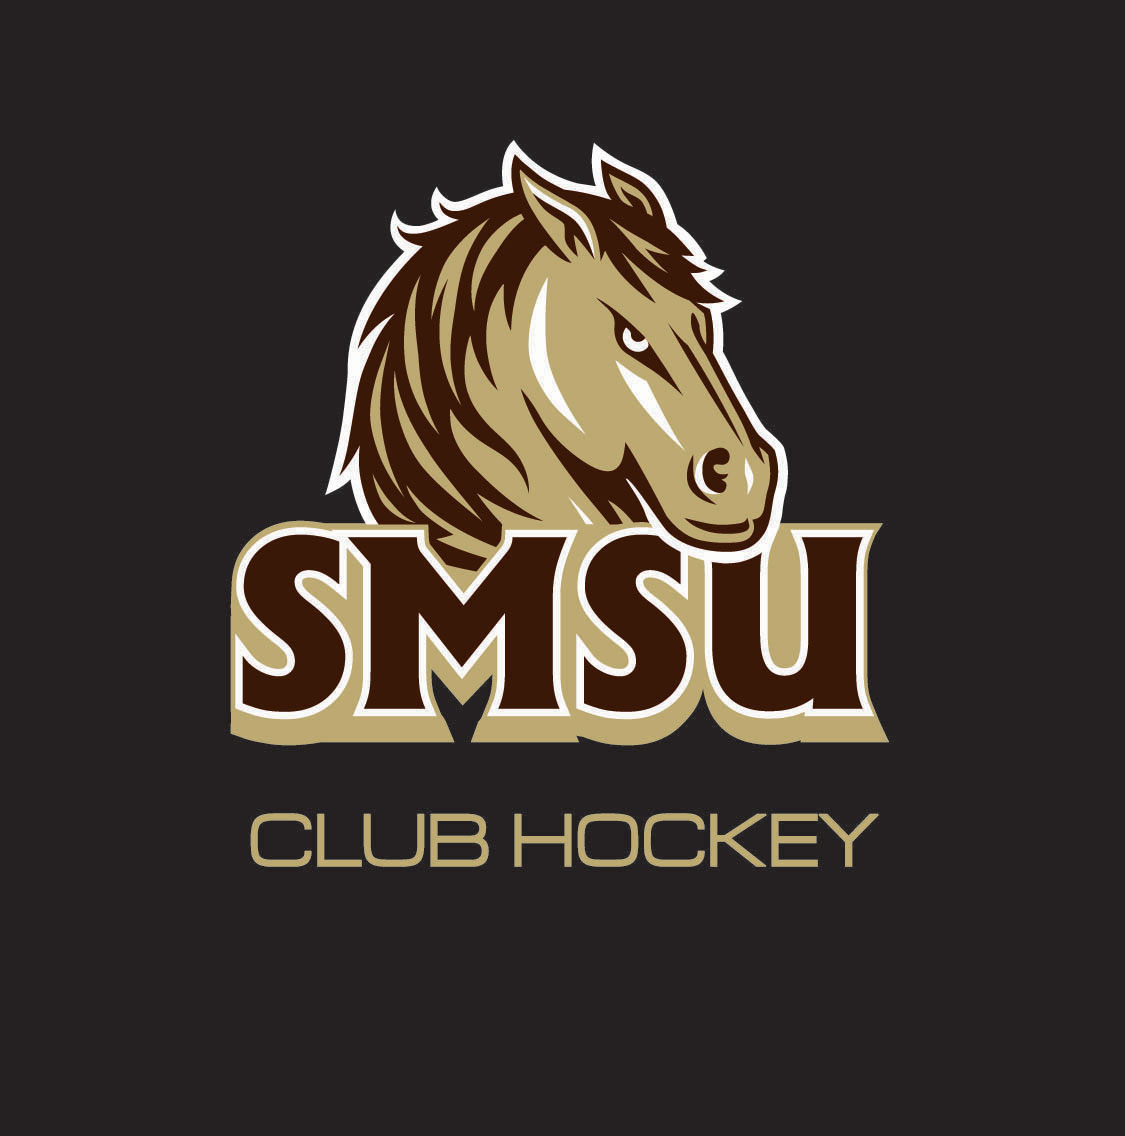 SMSU Club Hockey